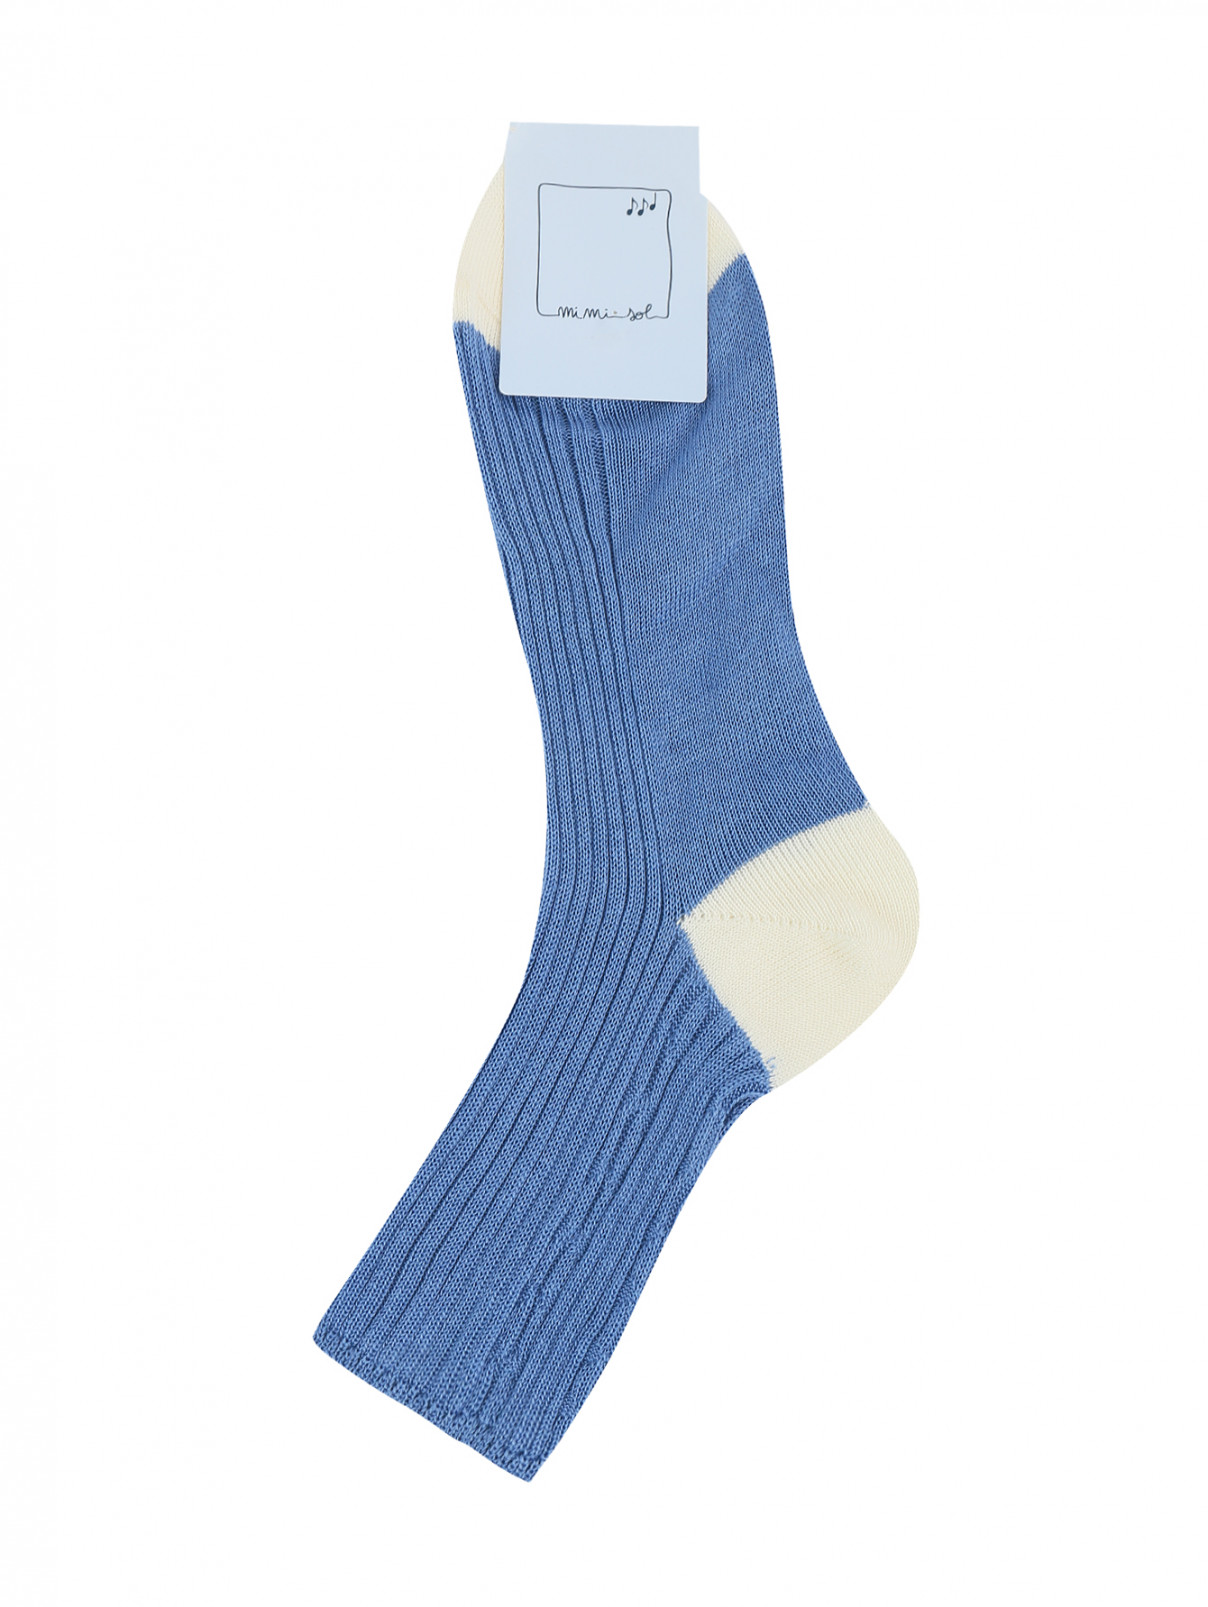 Высокие носки из хлопка с контрастными вставками MiMiSol  –  Общий вид  – Цвет:  Синий